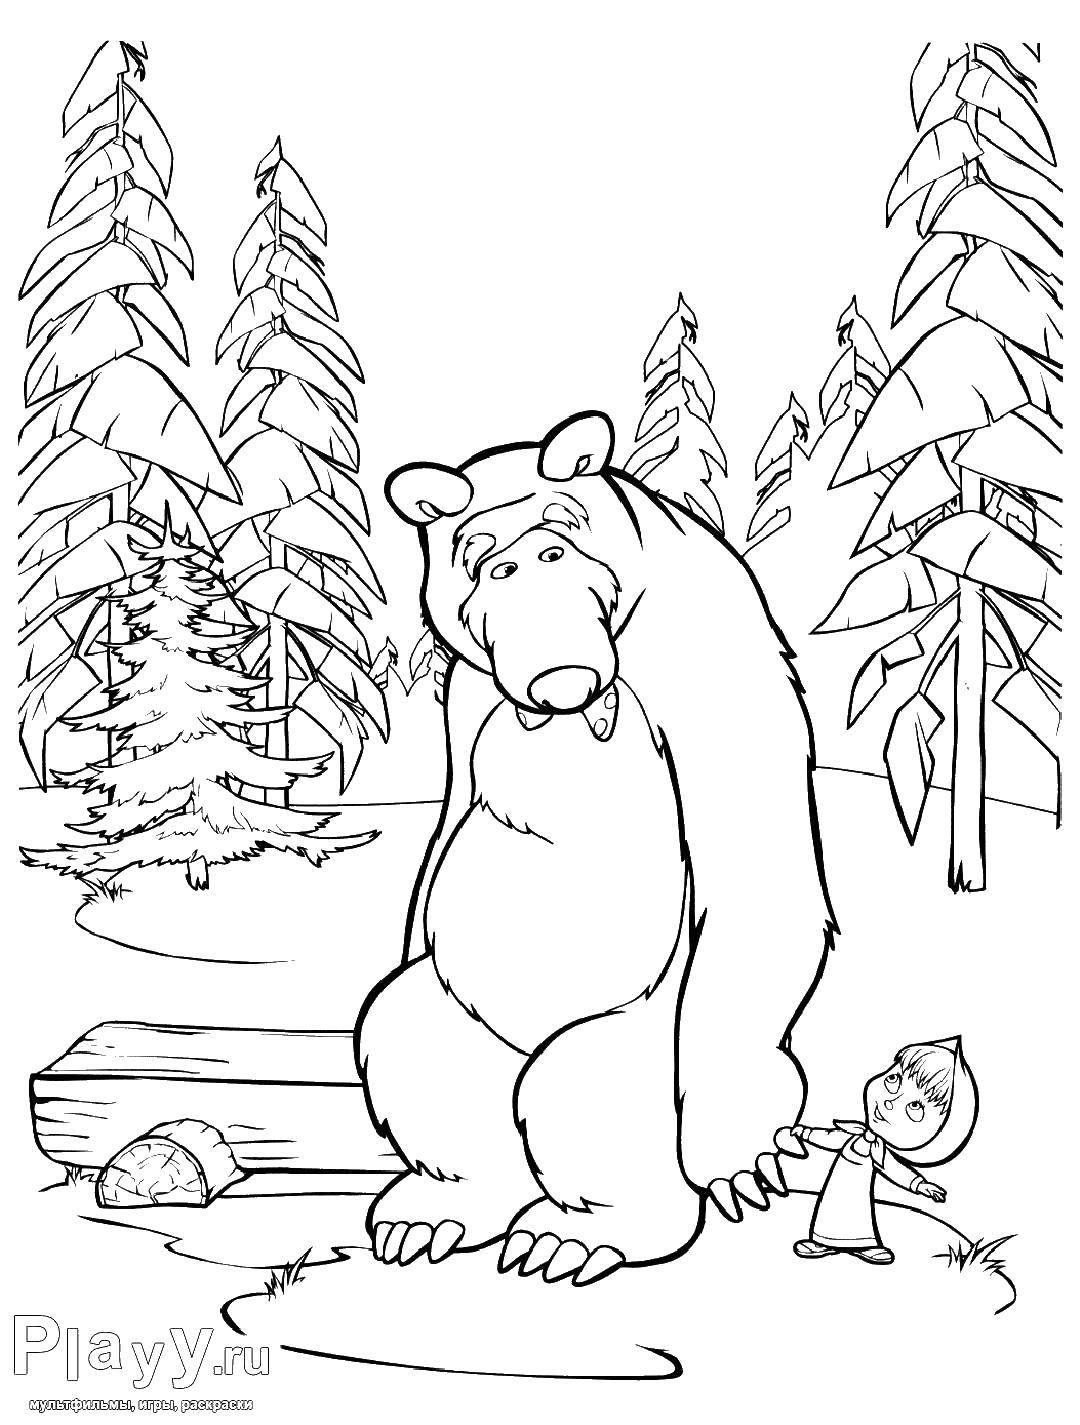 Раскраски для детей про озорную Машу из мультфильма Маша и медведь  Маша любит медведя